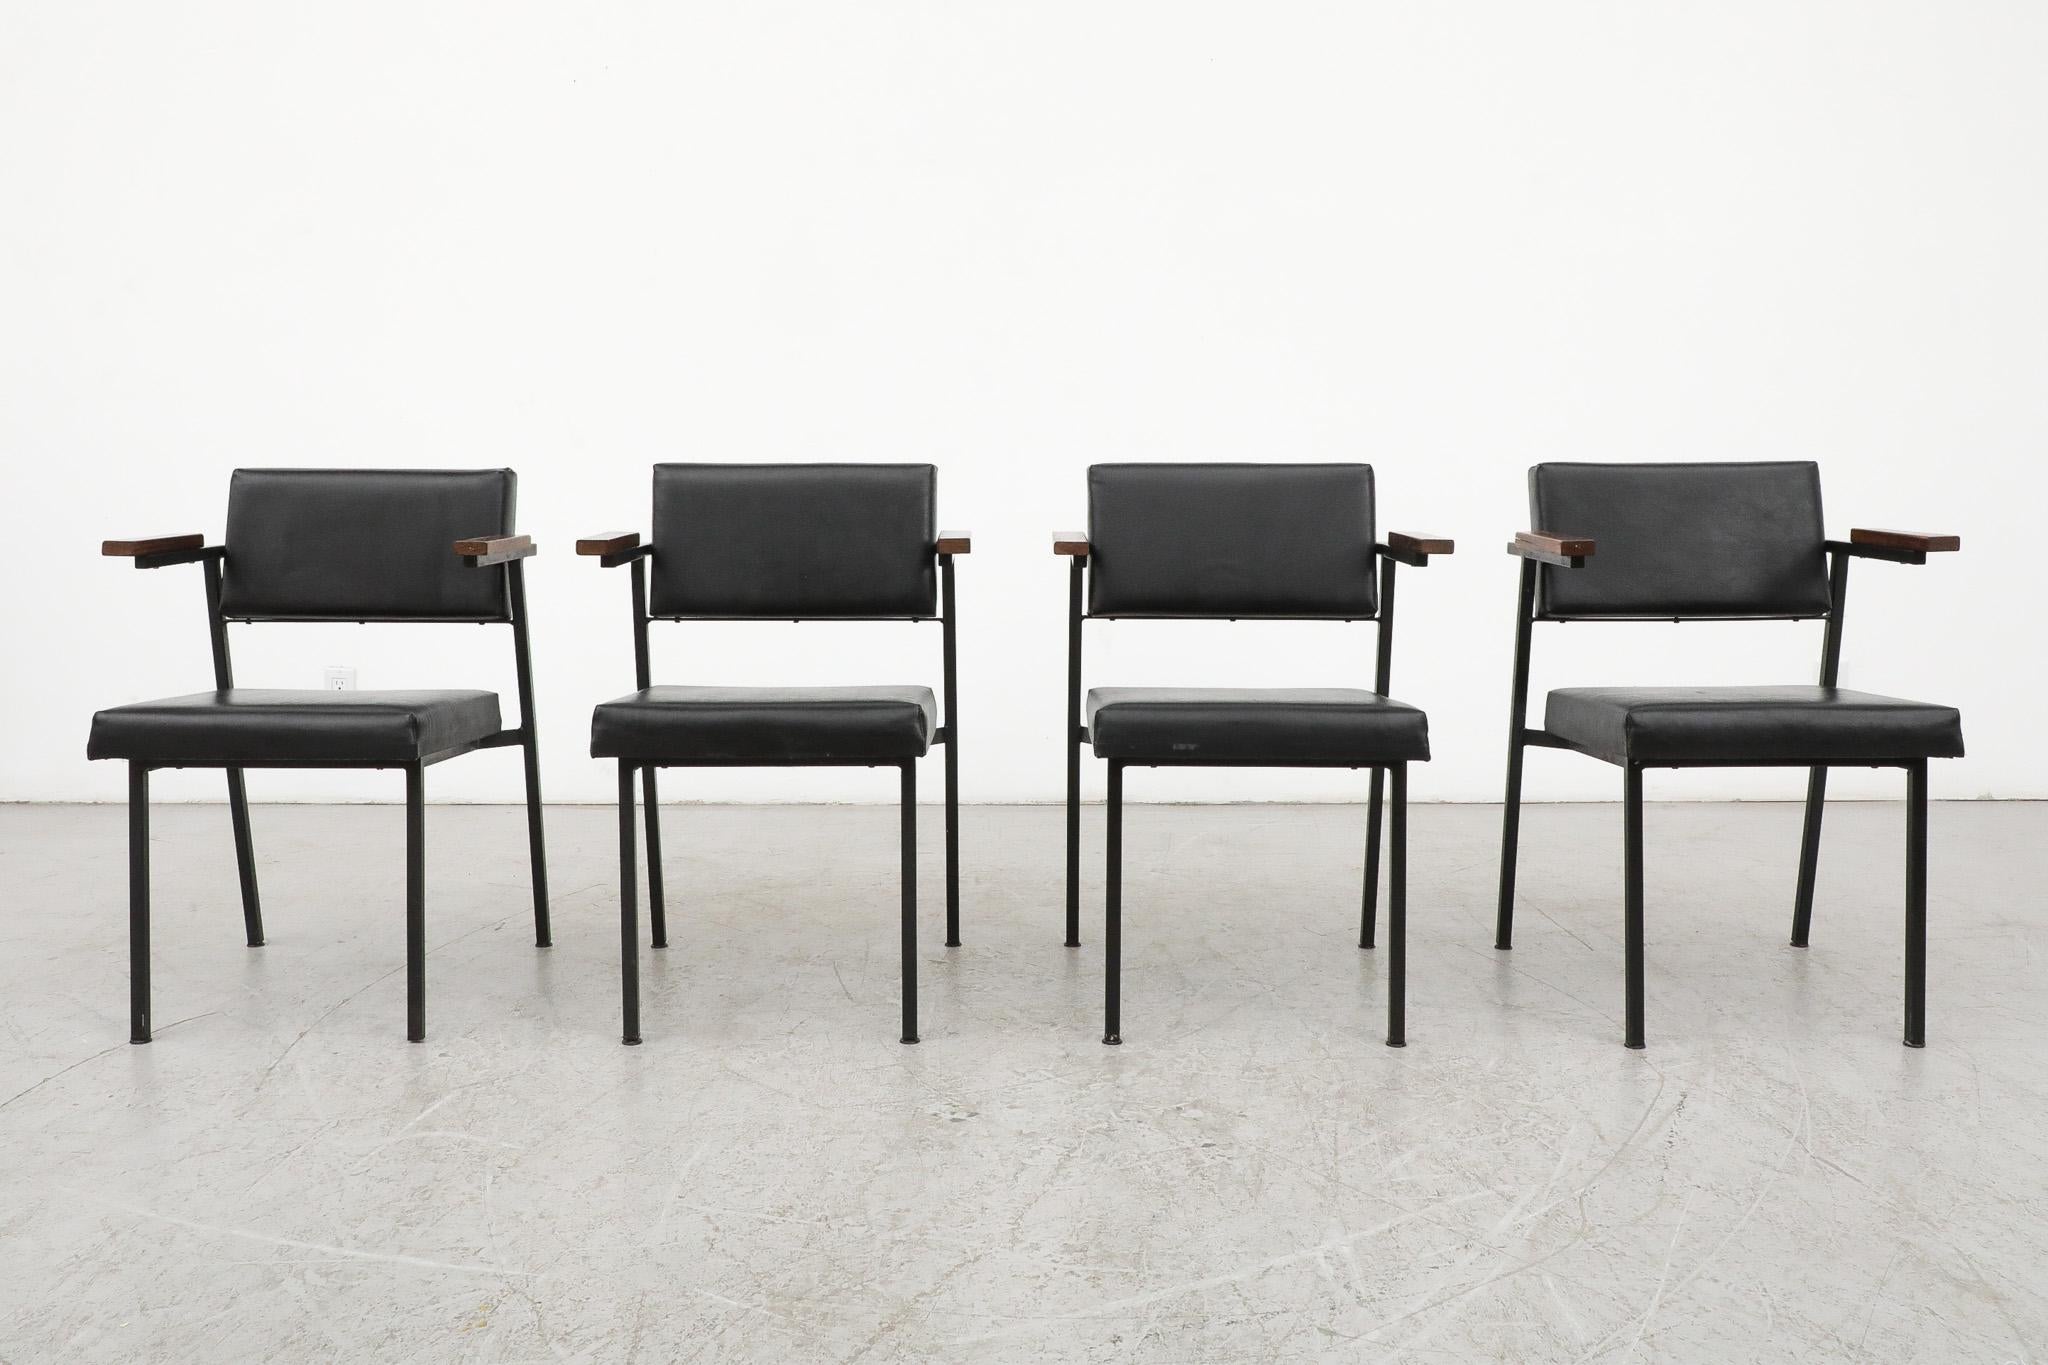 4 Esszimmerstühle 'SE 69' von Martin Visser für 't Spectrum 1959. Die Stühle haben schwarz emaillierte Gestelle mit Armlehnen aus Wenge und schwarzer Skai-Polsterung. Visser, eine Quintessenz der niederländischen Nachkriegsdesignbewegung, begann